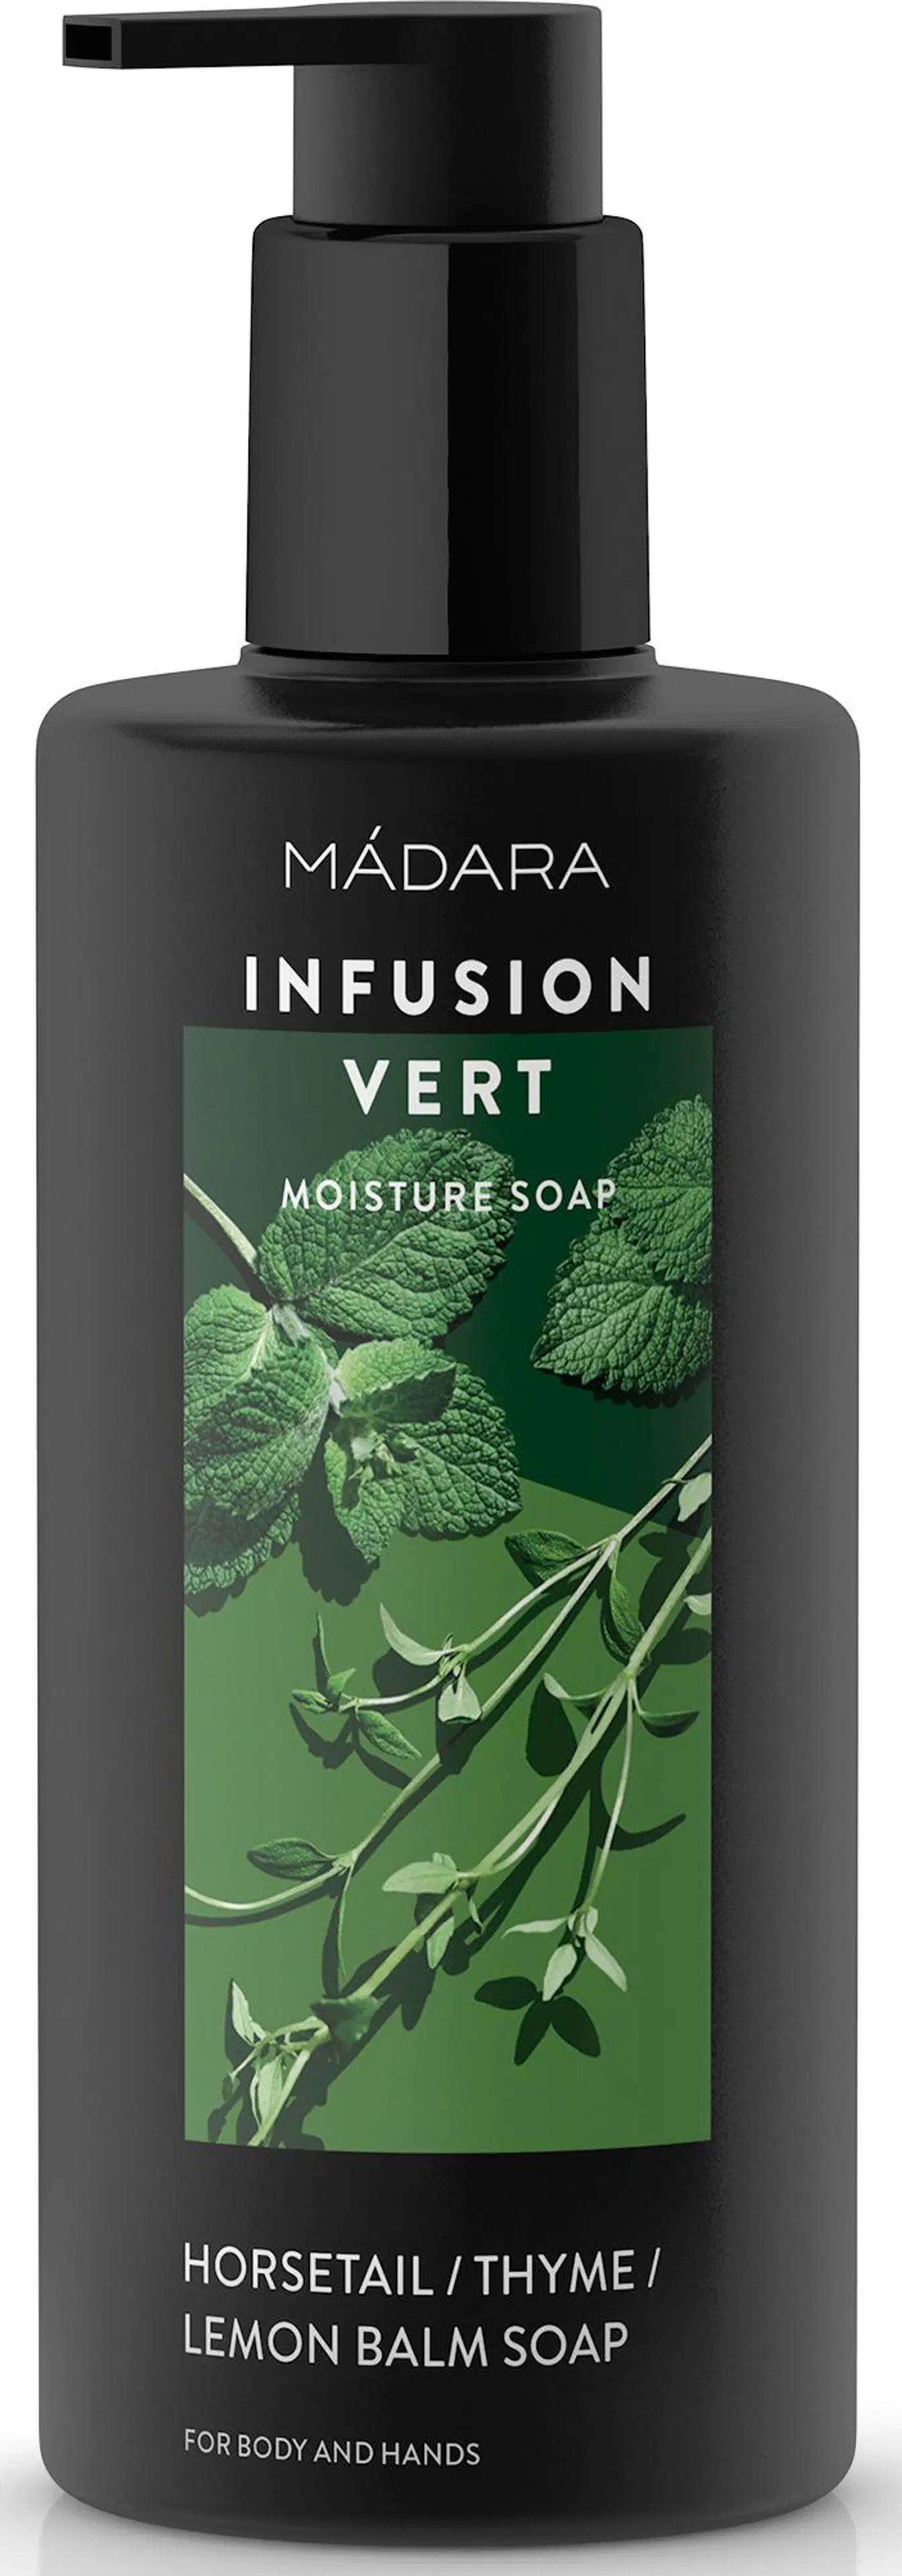 Mádara Infusion Vert Moisture Soap käsi- ja vartalosaippua 300 ml